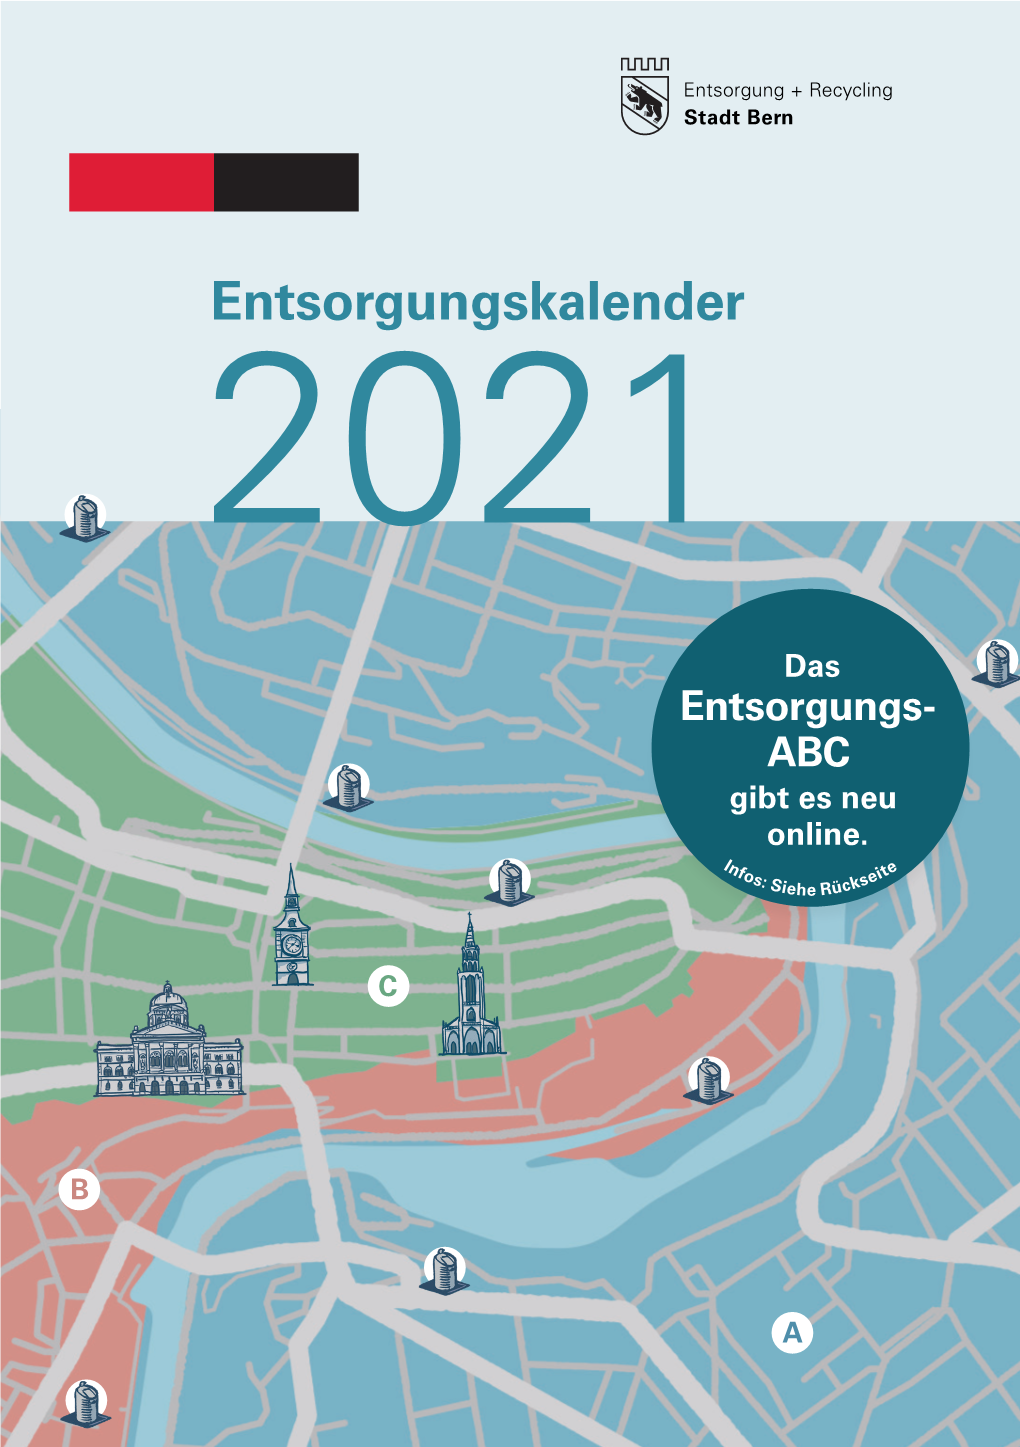 Entsorgungskalender Der Stadt Bern Für Das Jahr 2021